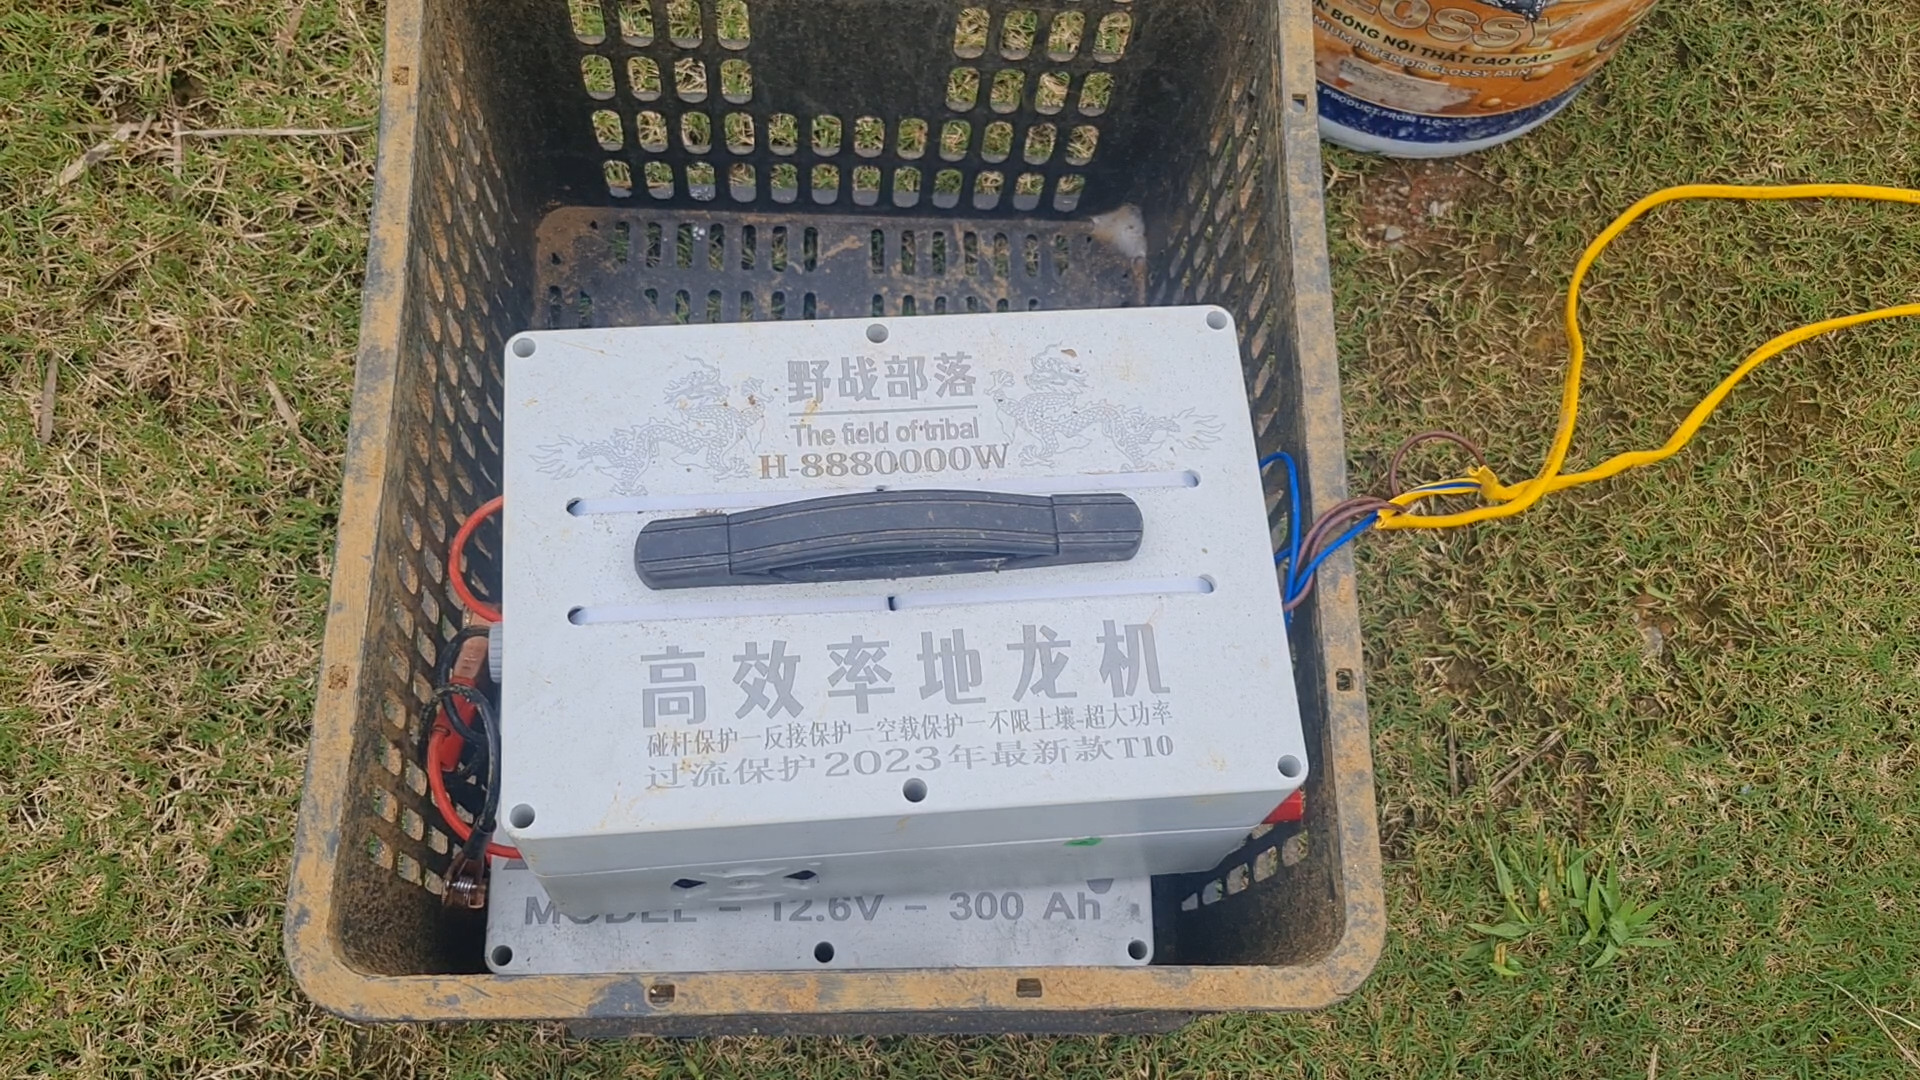 Bình kích điện bắt giun đất bị thu giữ ở Lai Châu. Chính quyền thành phố Lai Châu yêu cầu báo cáo về nạn kích điện bắt giun đất trước 10/8. Ảnh: Hải Đăng.